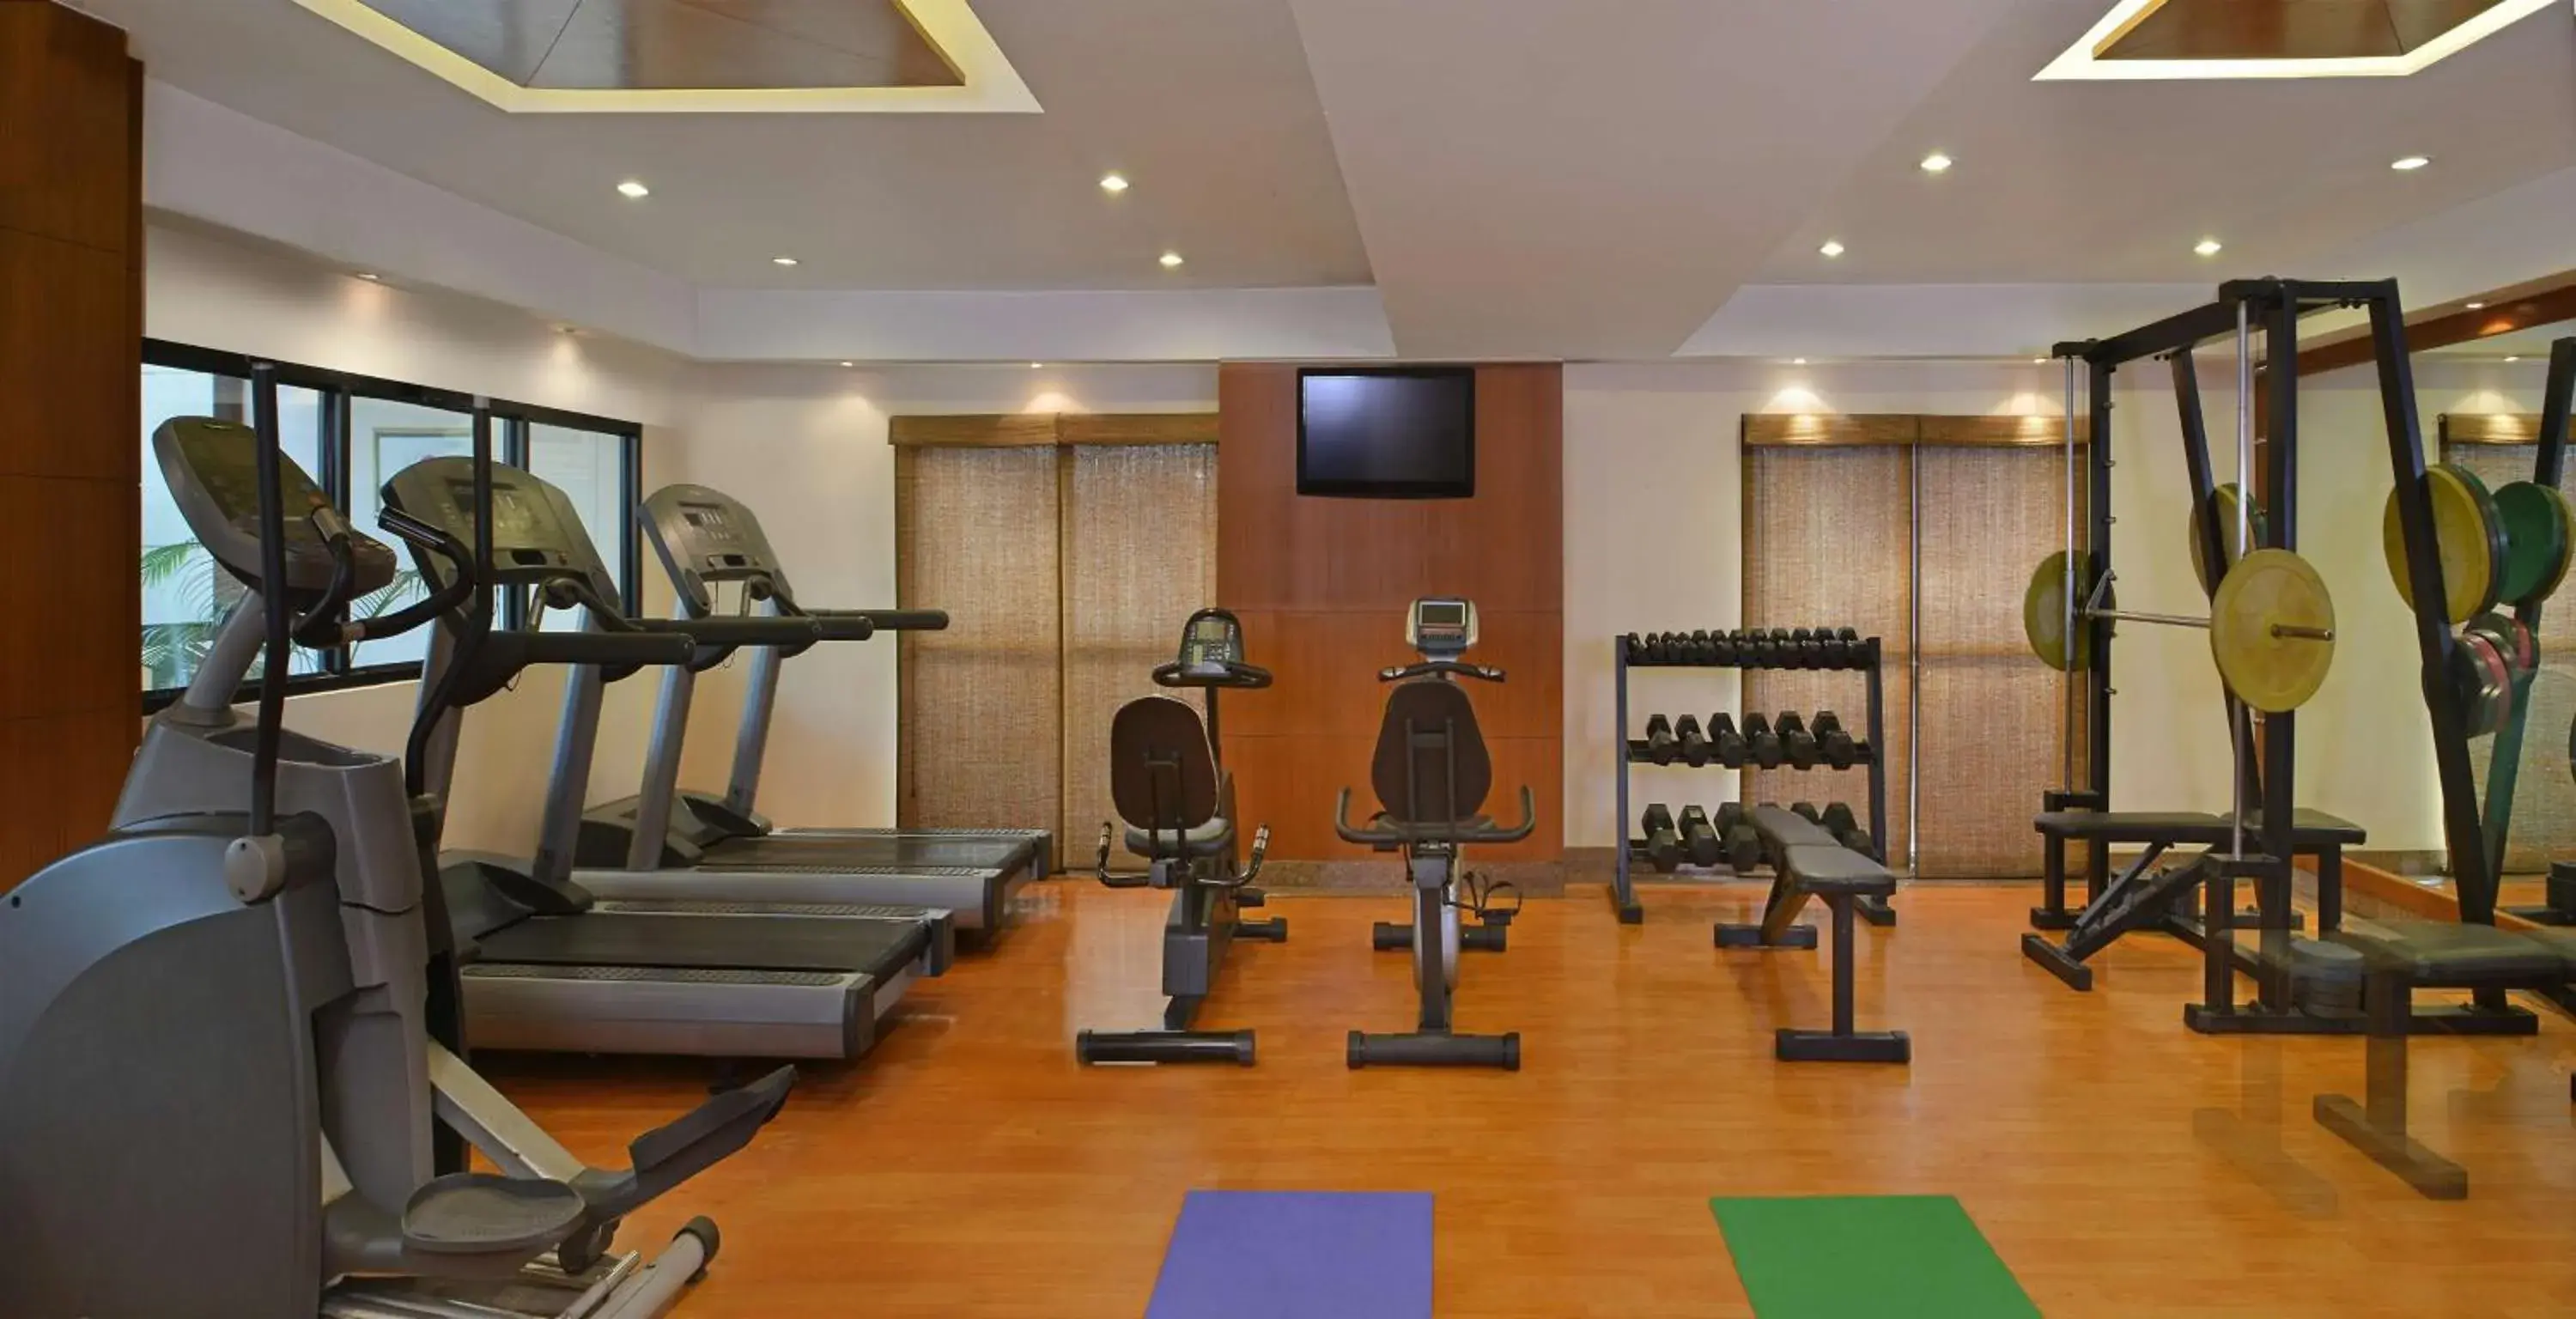 Activities, Fitness Center/Facilities in Best Western Plus Jalandhar